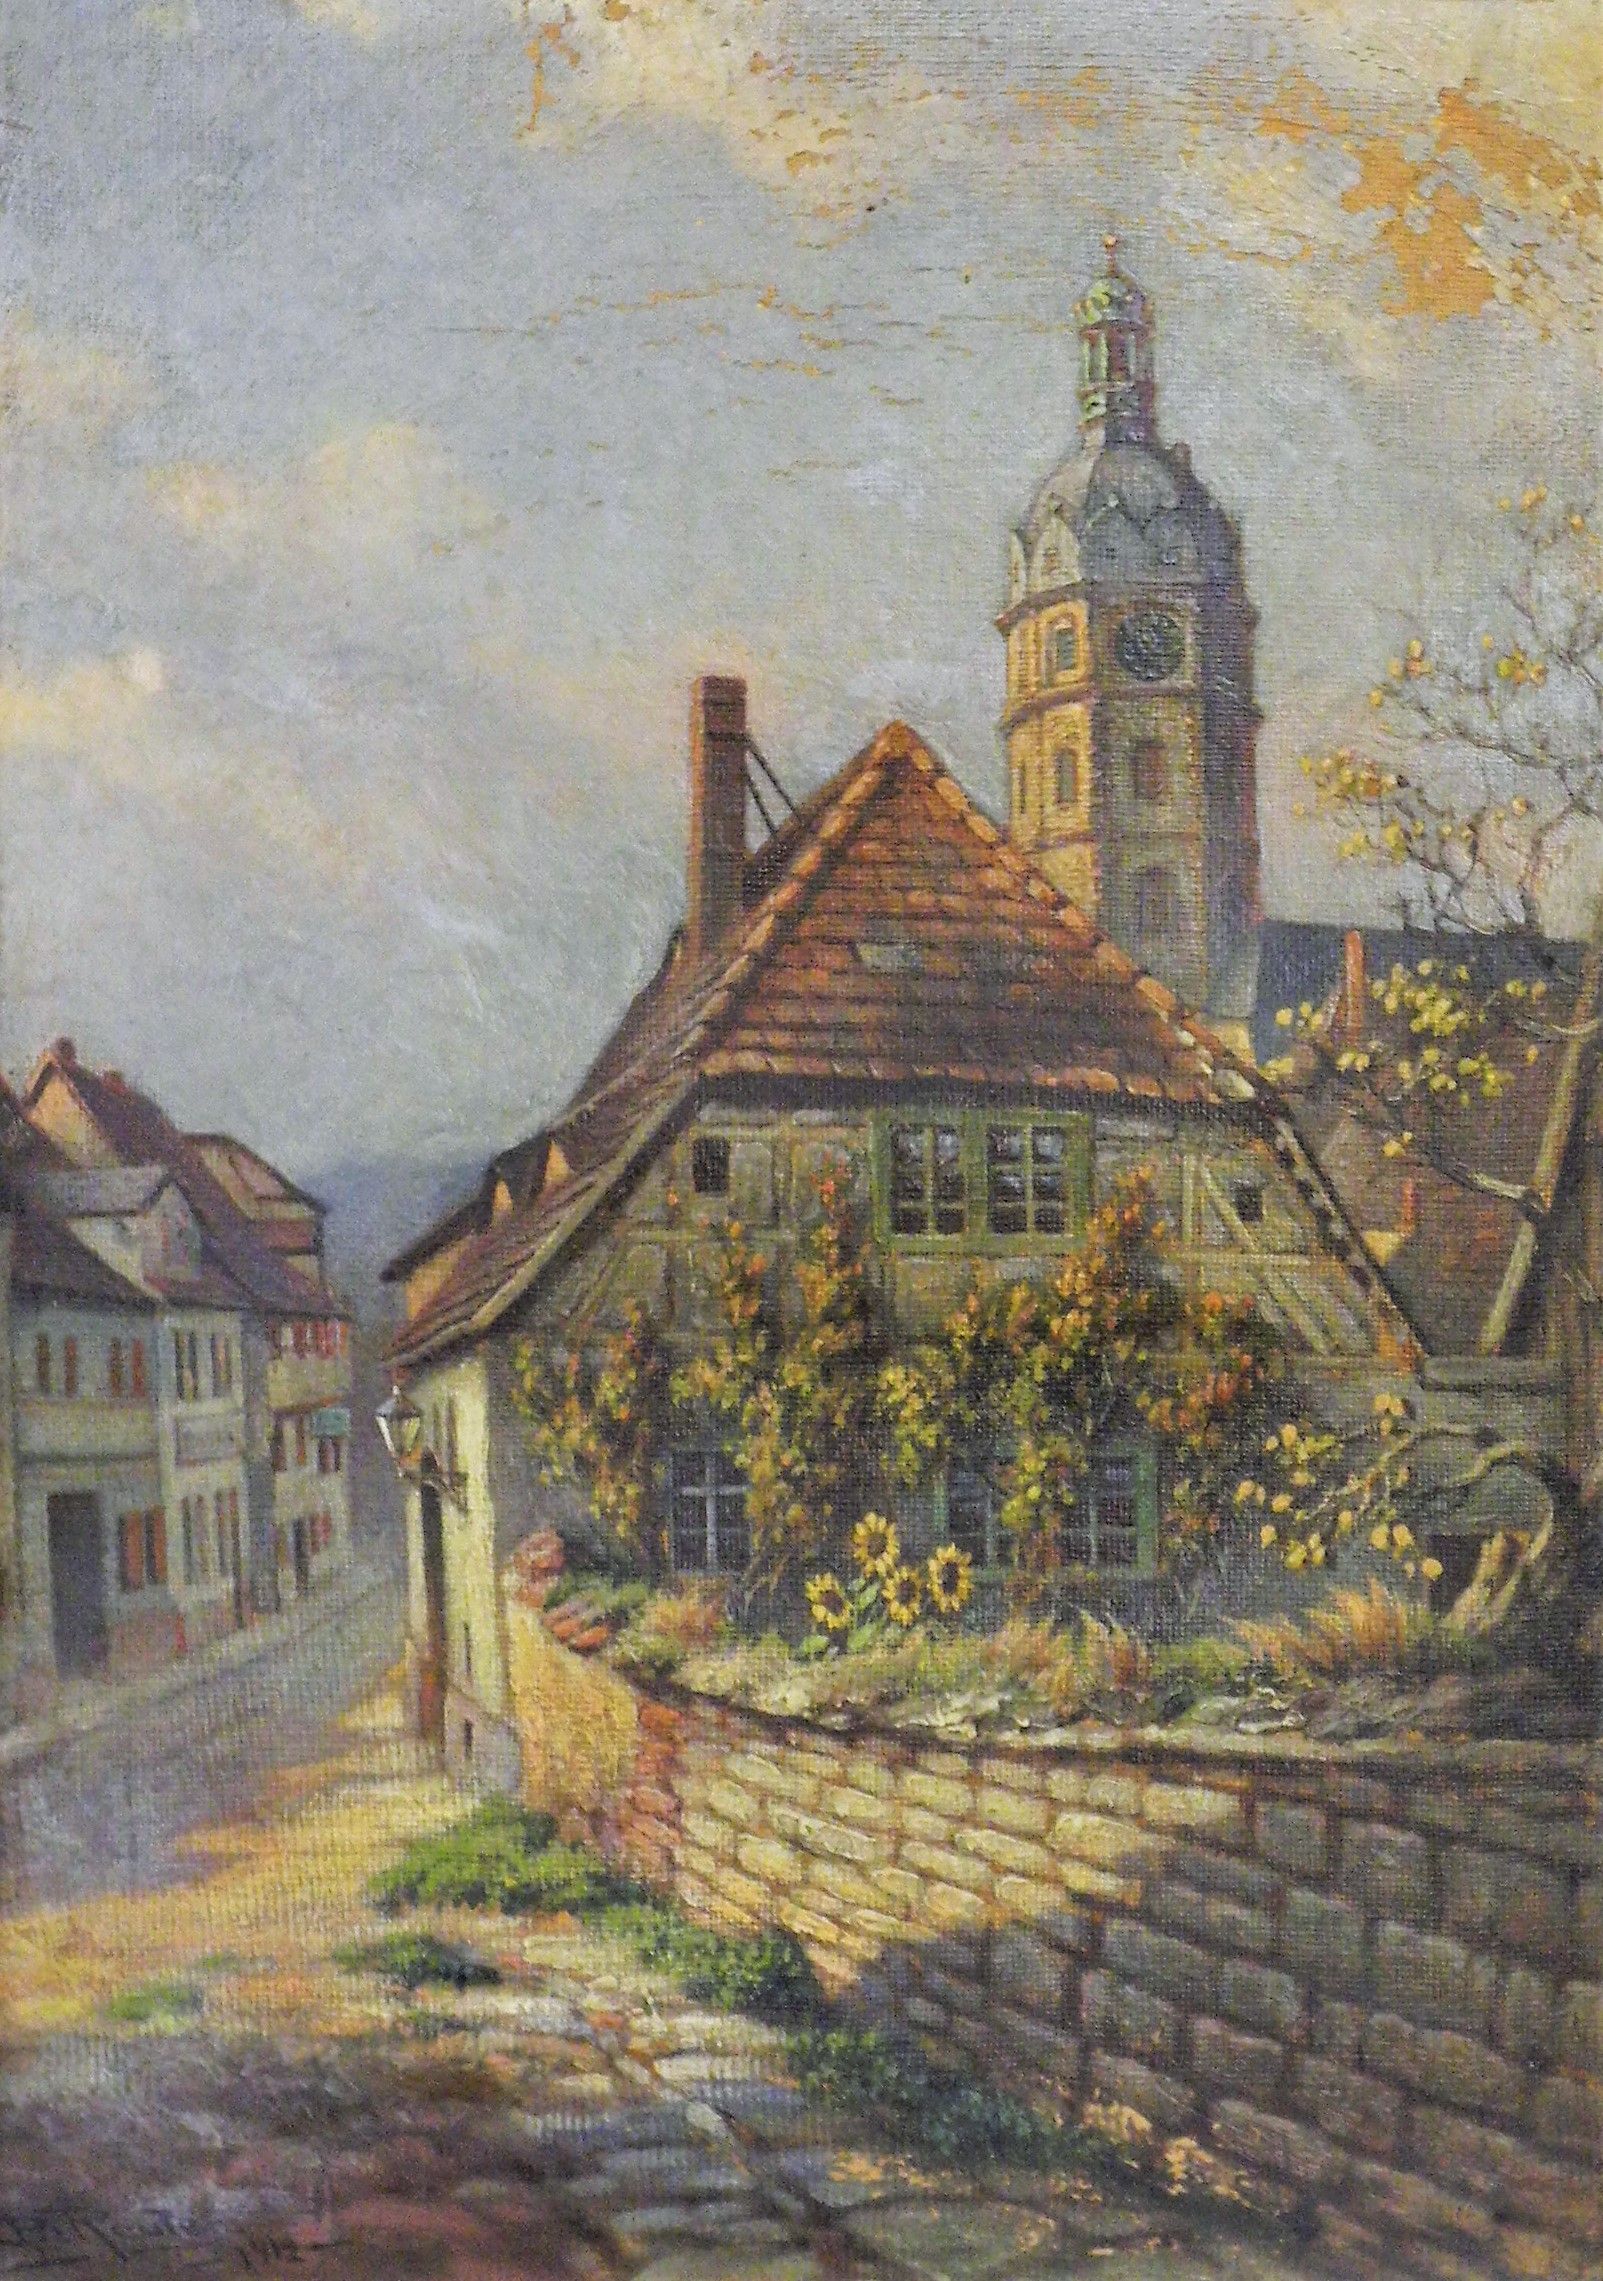 Die Straße "Im Sack" in Sangerhausen (Gemälde von Bruno Reuter) (Erlebniswelt Museen e. V. CC BY-NC-SA)